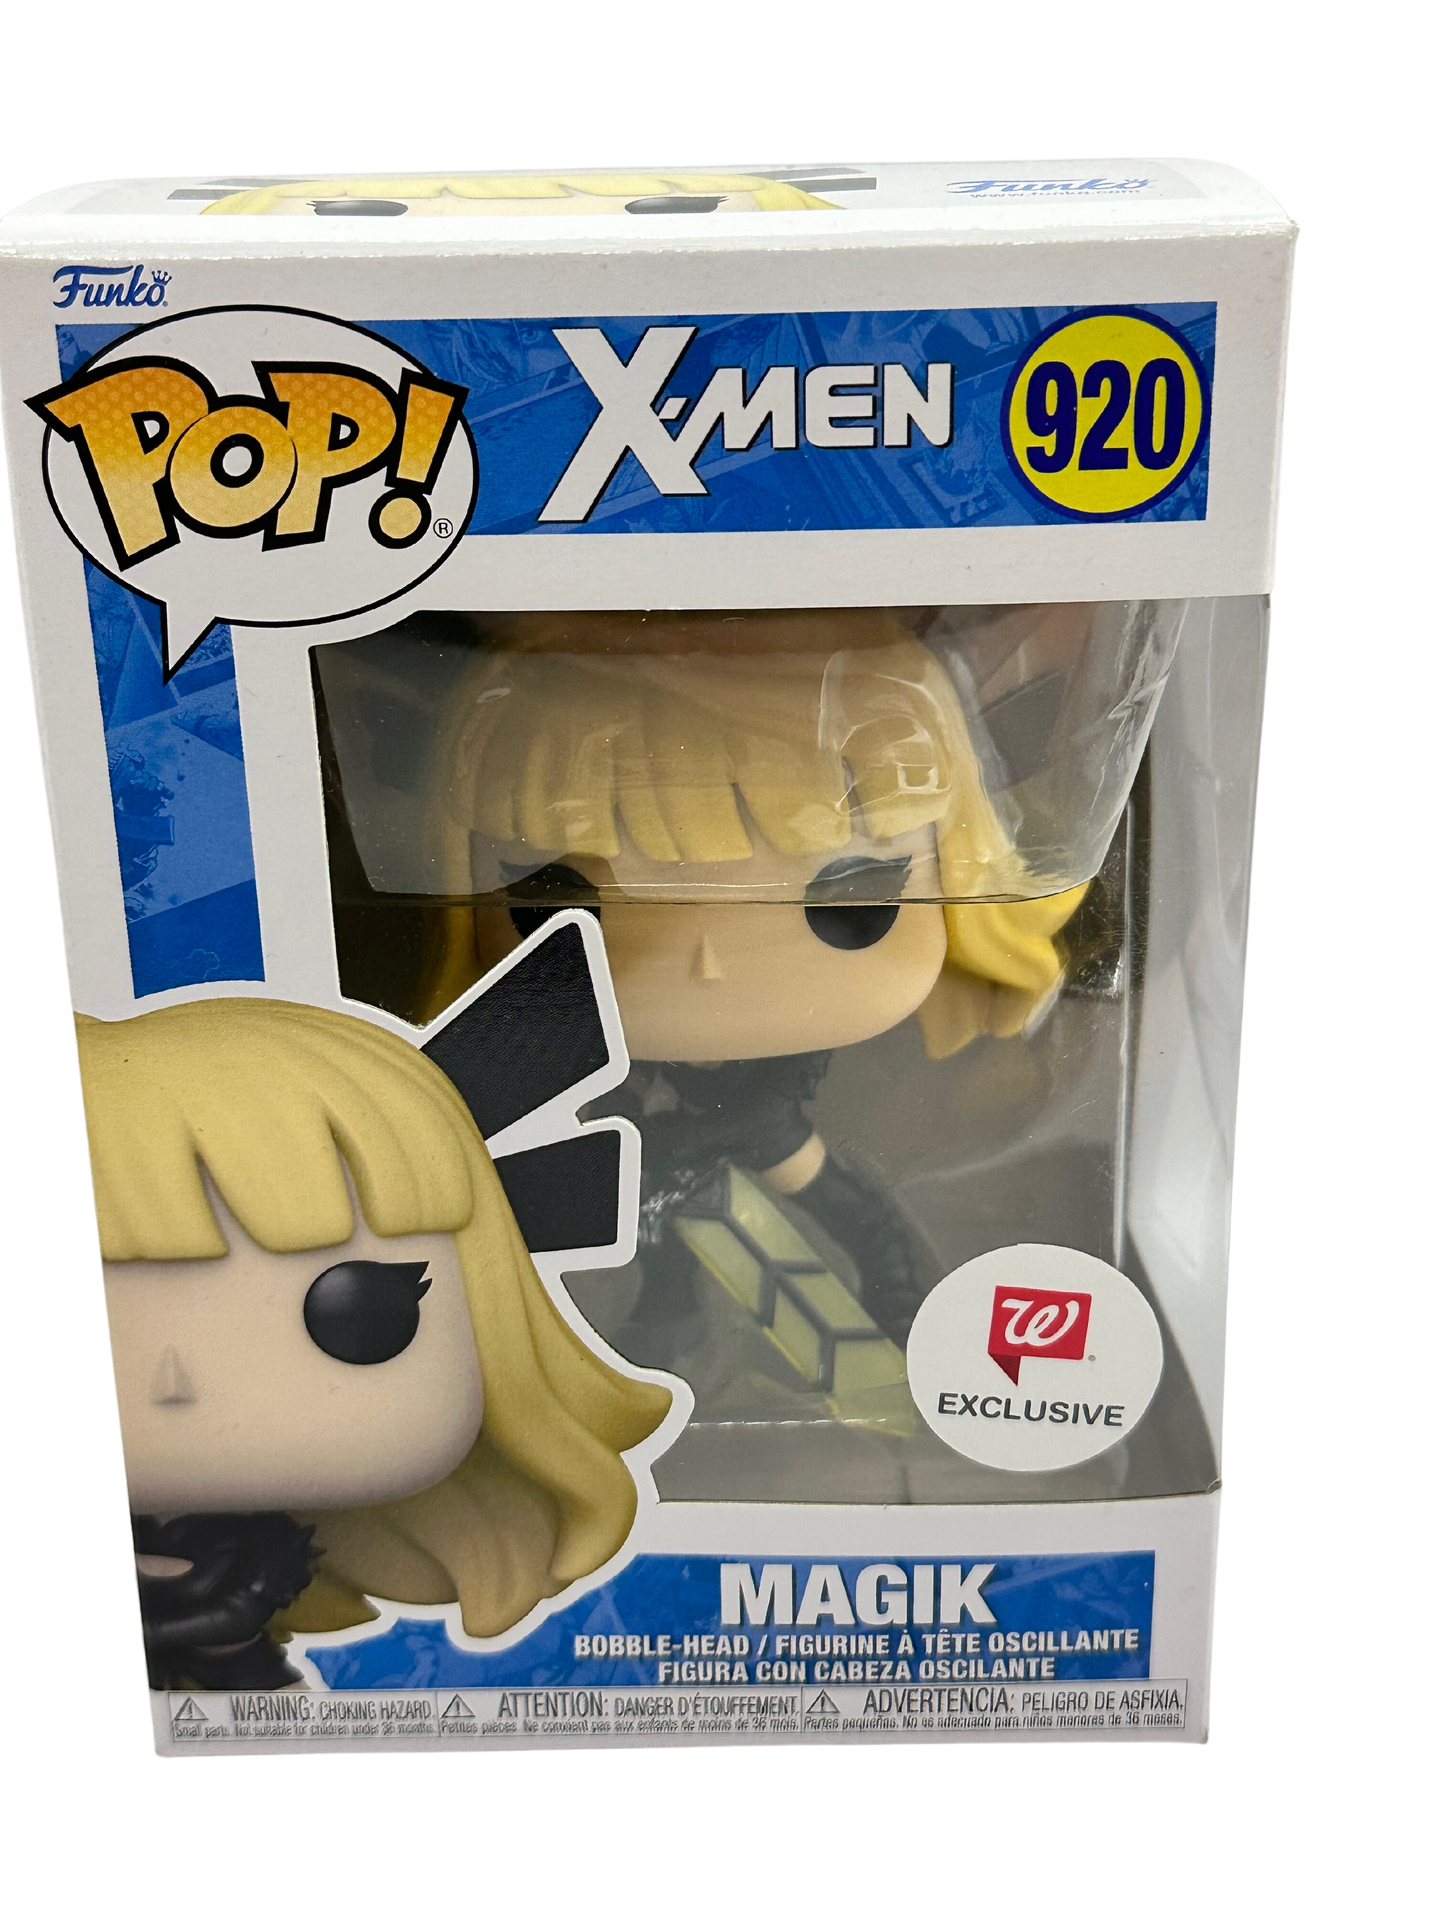 Pop! X-Men Magik Vinyl Figure 920 Walgreen Ezclusive